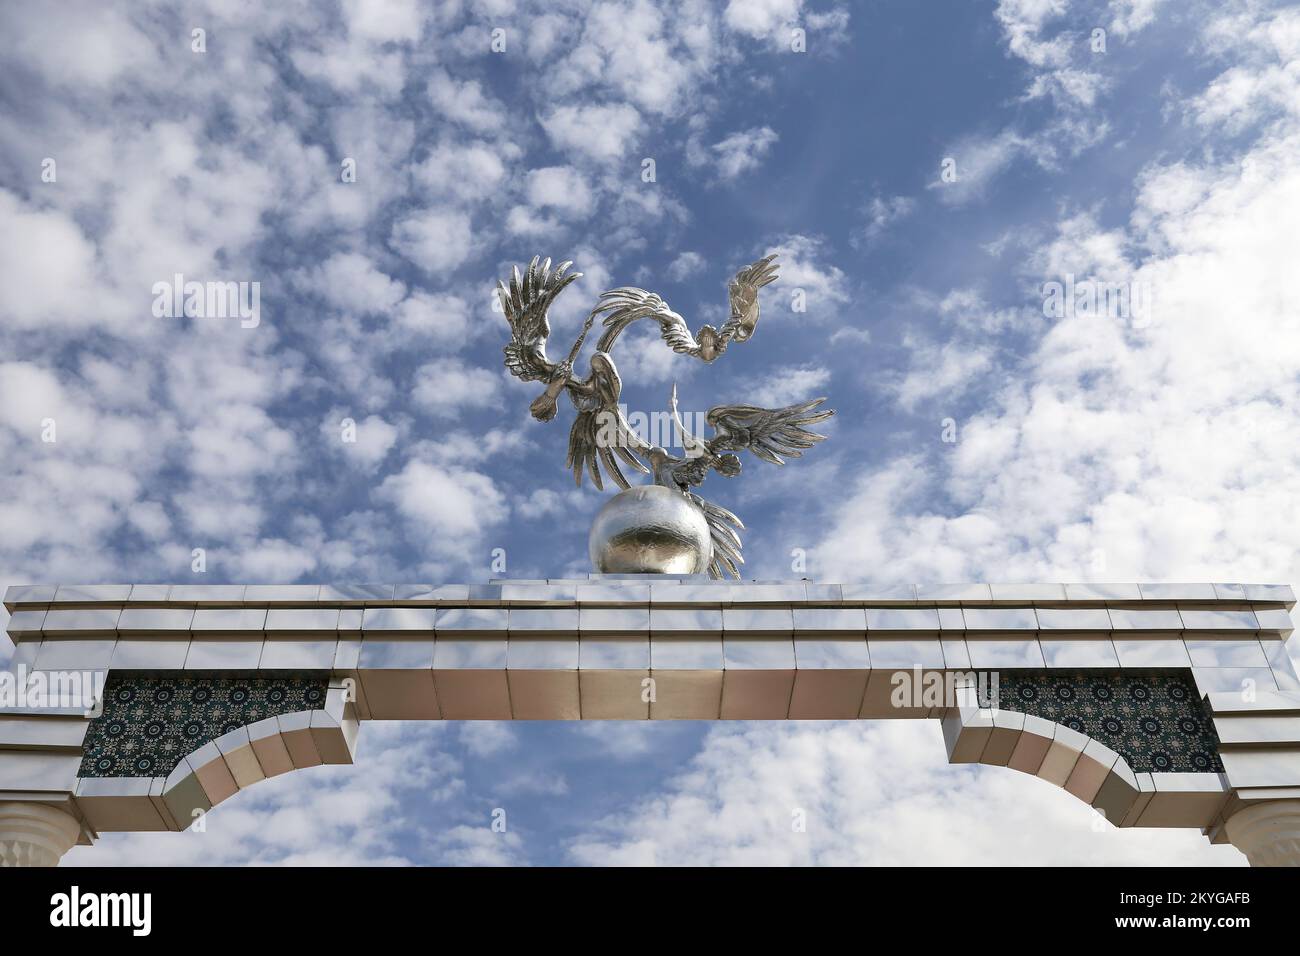 Cigognes symbolisant la paix et le calme, Mustakillik Maydoni (place de l'indépendance), Tachkent central, province de Tachkent, Ouzbékistan, Asie centrale Banque D'Images